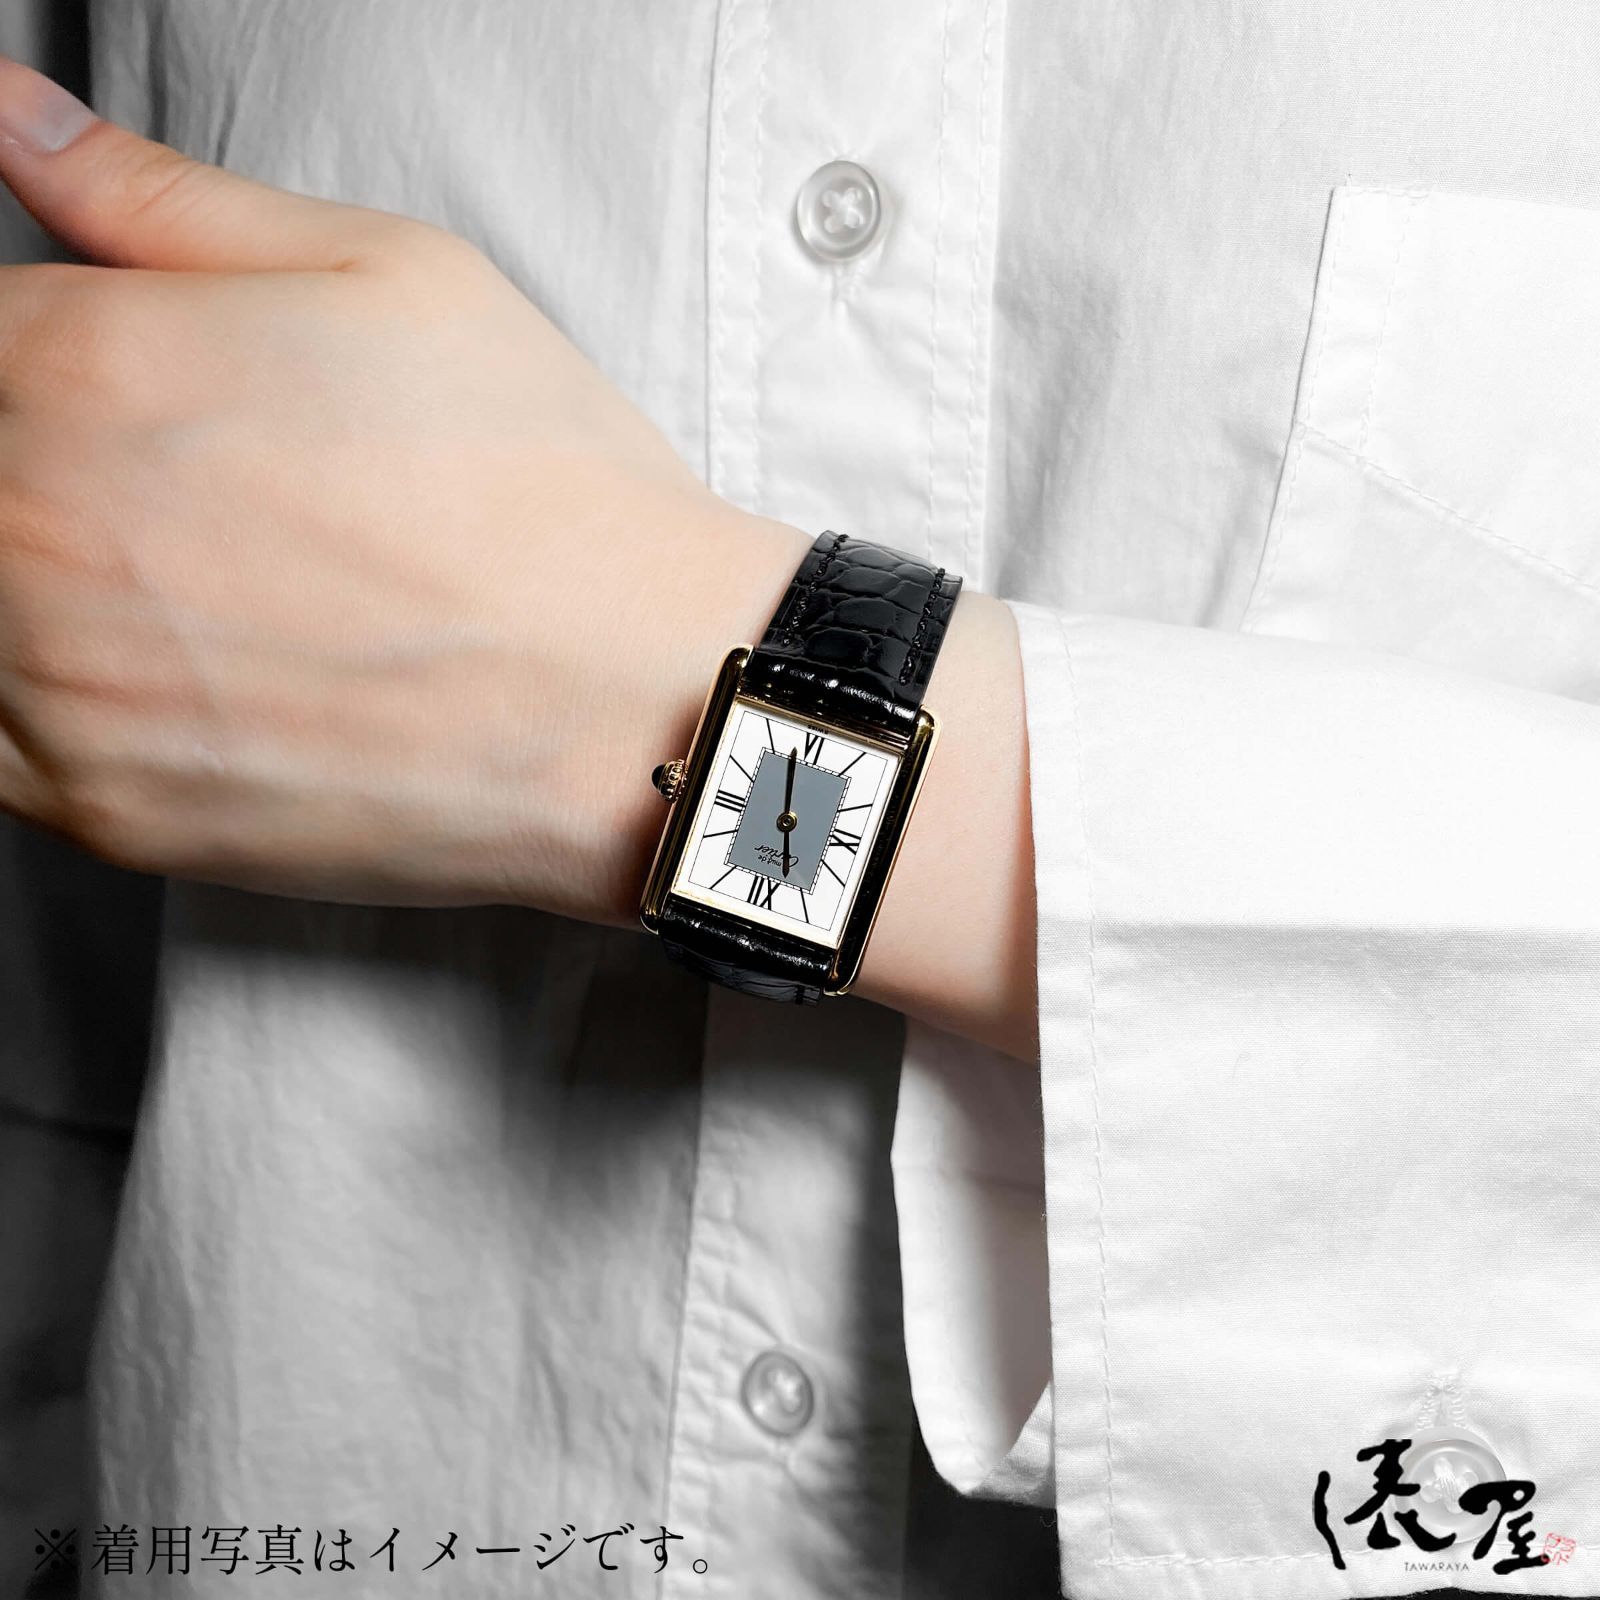 【国際保証書】カルティエ マストタンク LM センターグレイ 極美品 メンズ ヴィンテージ Cartier 時計 腕時計 中古【送料無料】